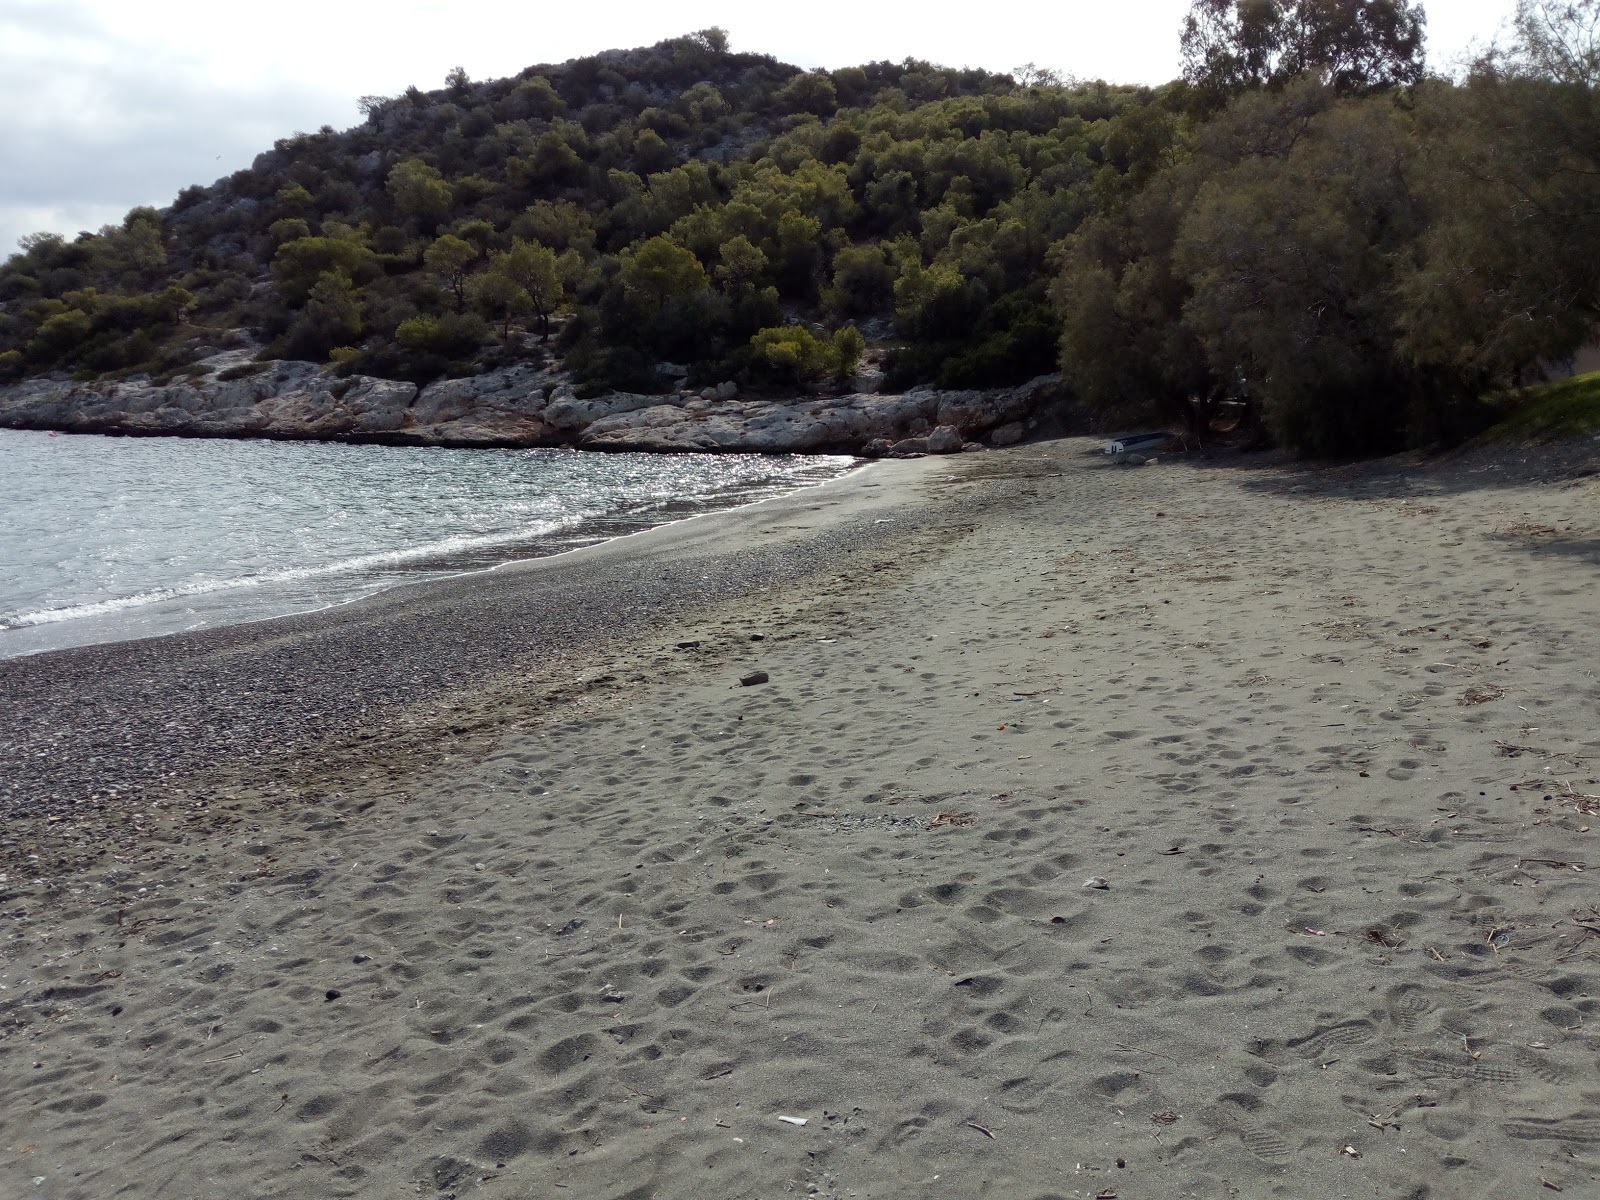 Zdjęcie Paralia Aias II z powierzchnią brązowy piasek